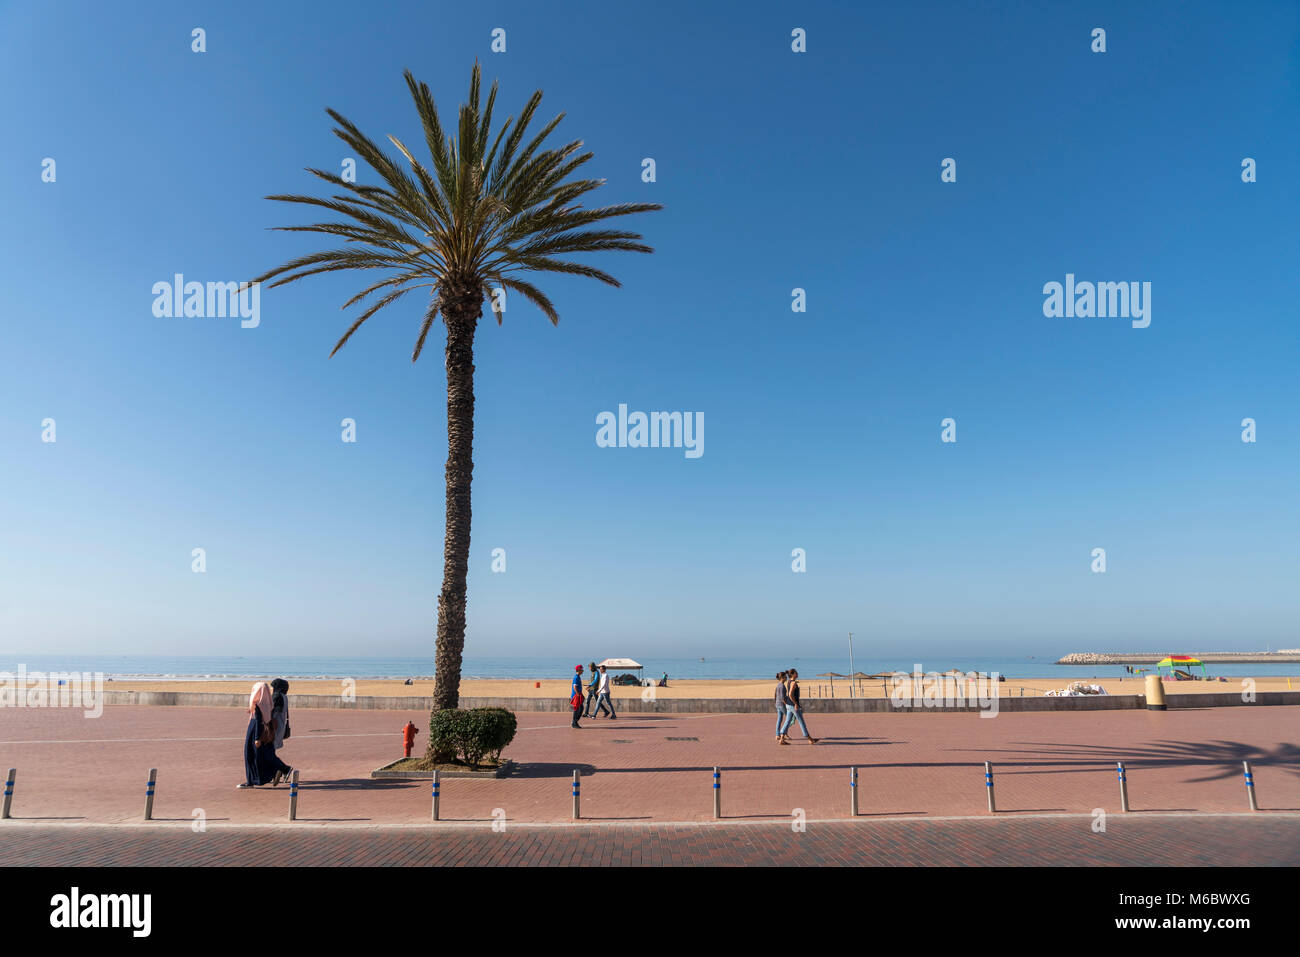 Promenade und Strand à Agadir, Königreich Marokko, Afrika | Promenade et la plage à Agadir, Royaume du Maroc, l'Afrique Banque D'Images